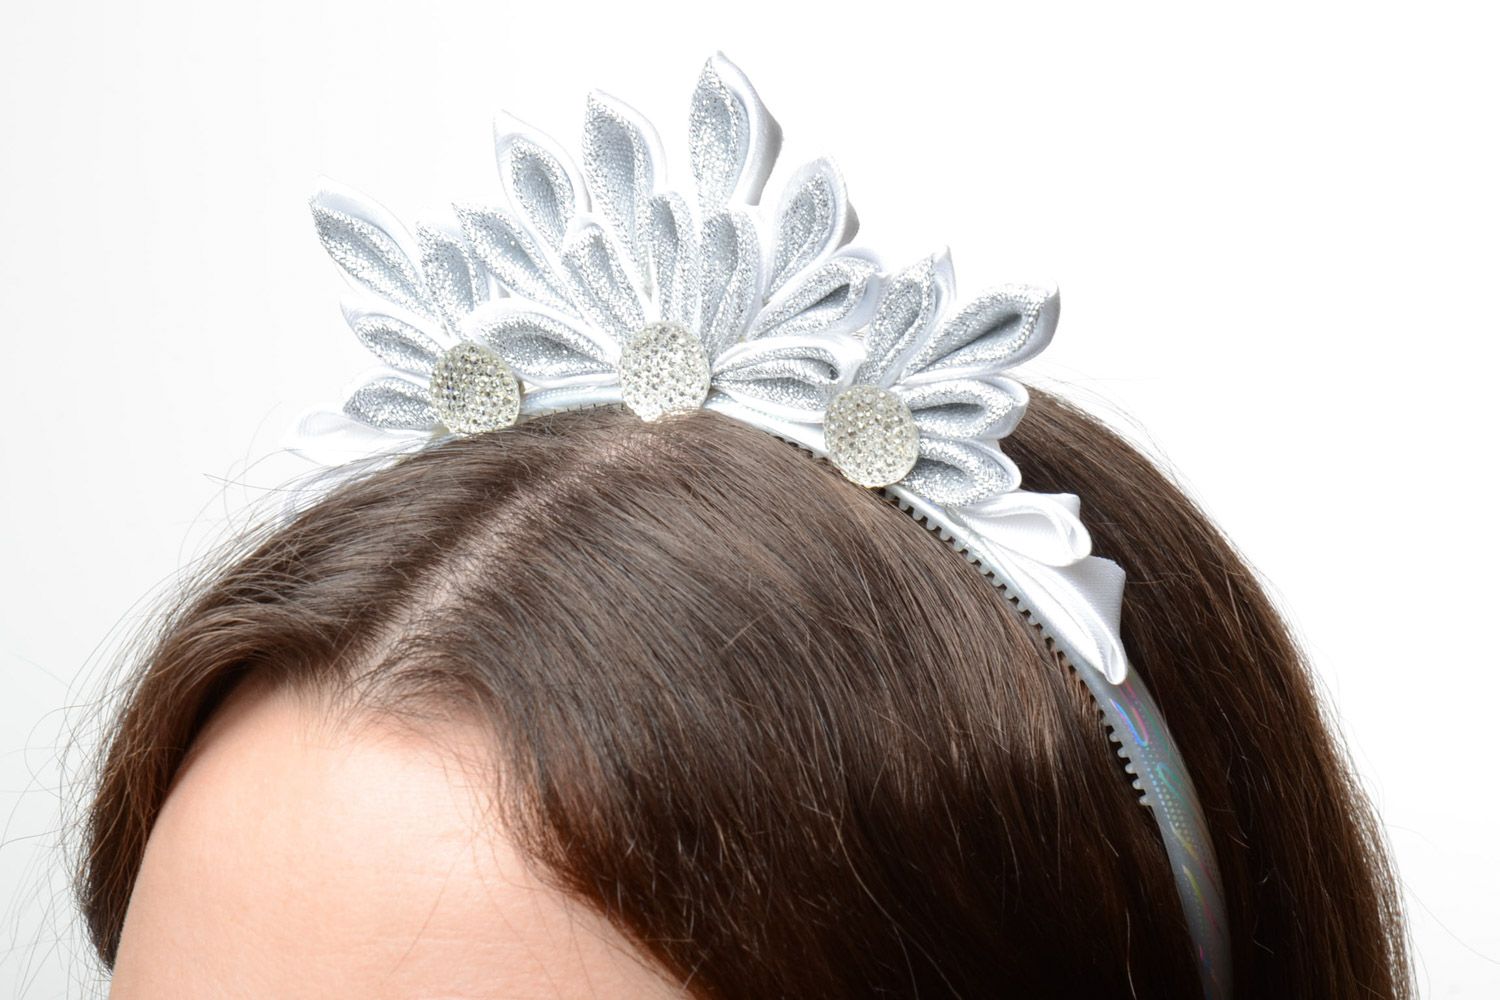 Enger Haarreif aus Bändern in Kanzashi Technik in silberner Farbe Handarbeit foto 1